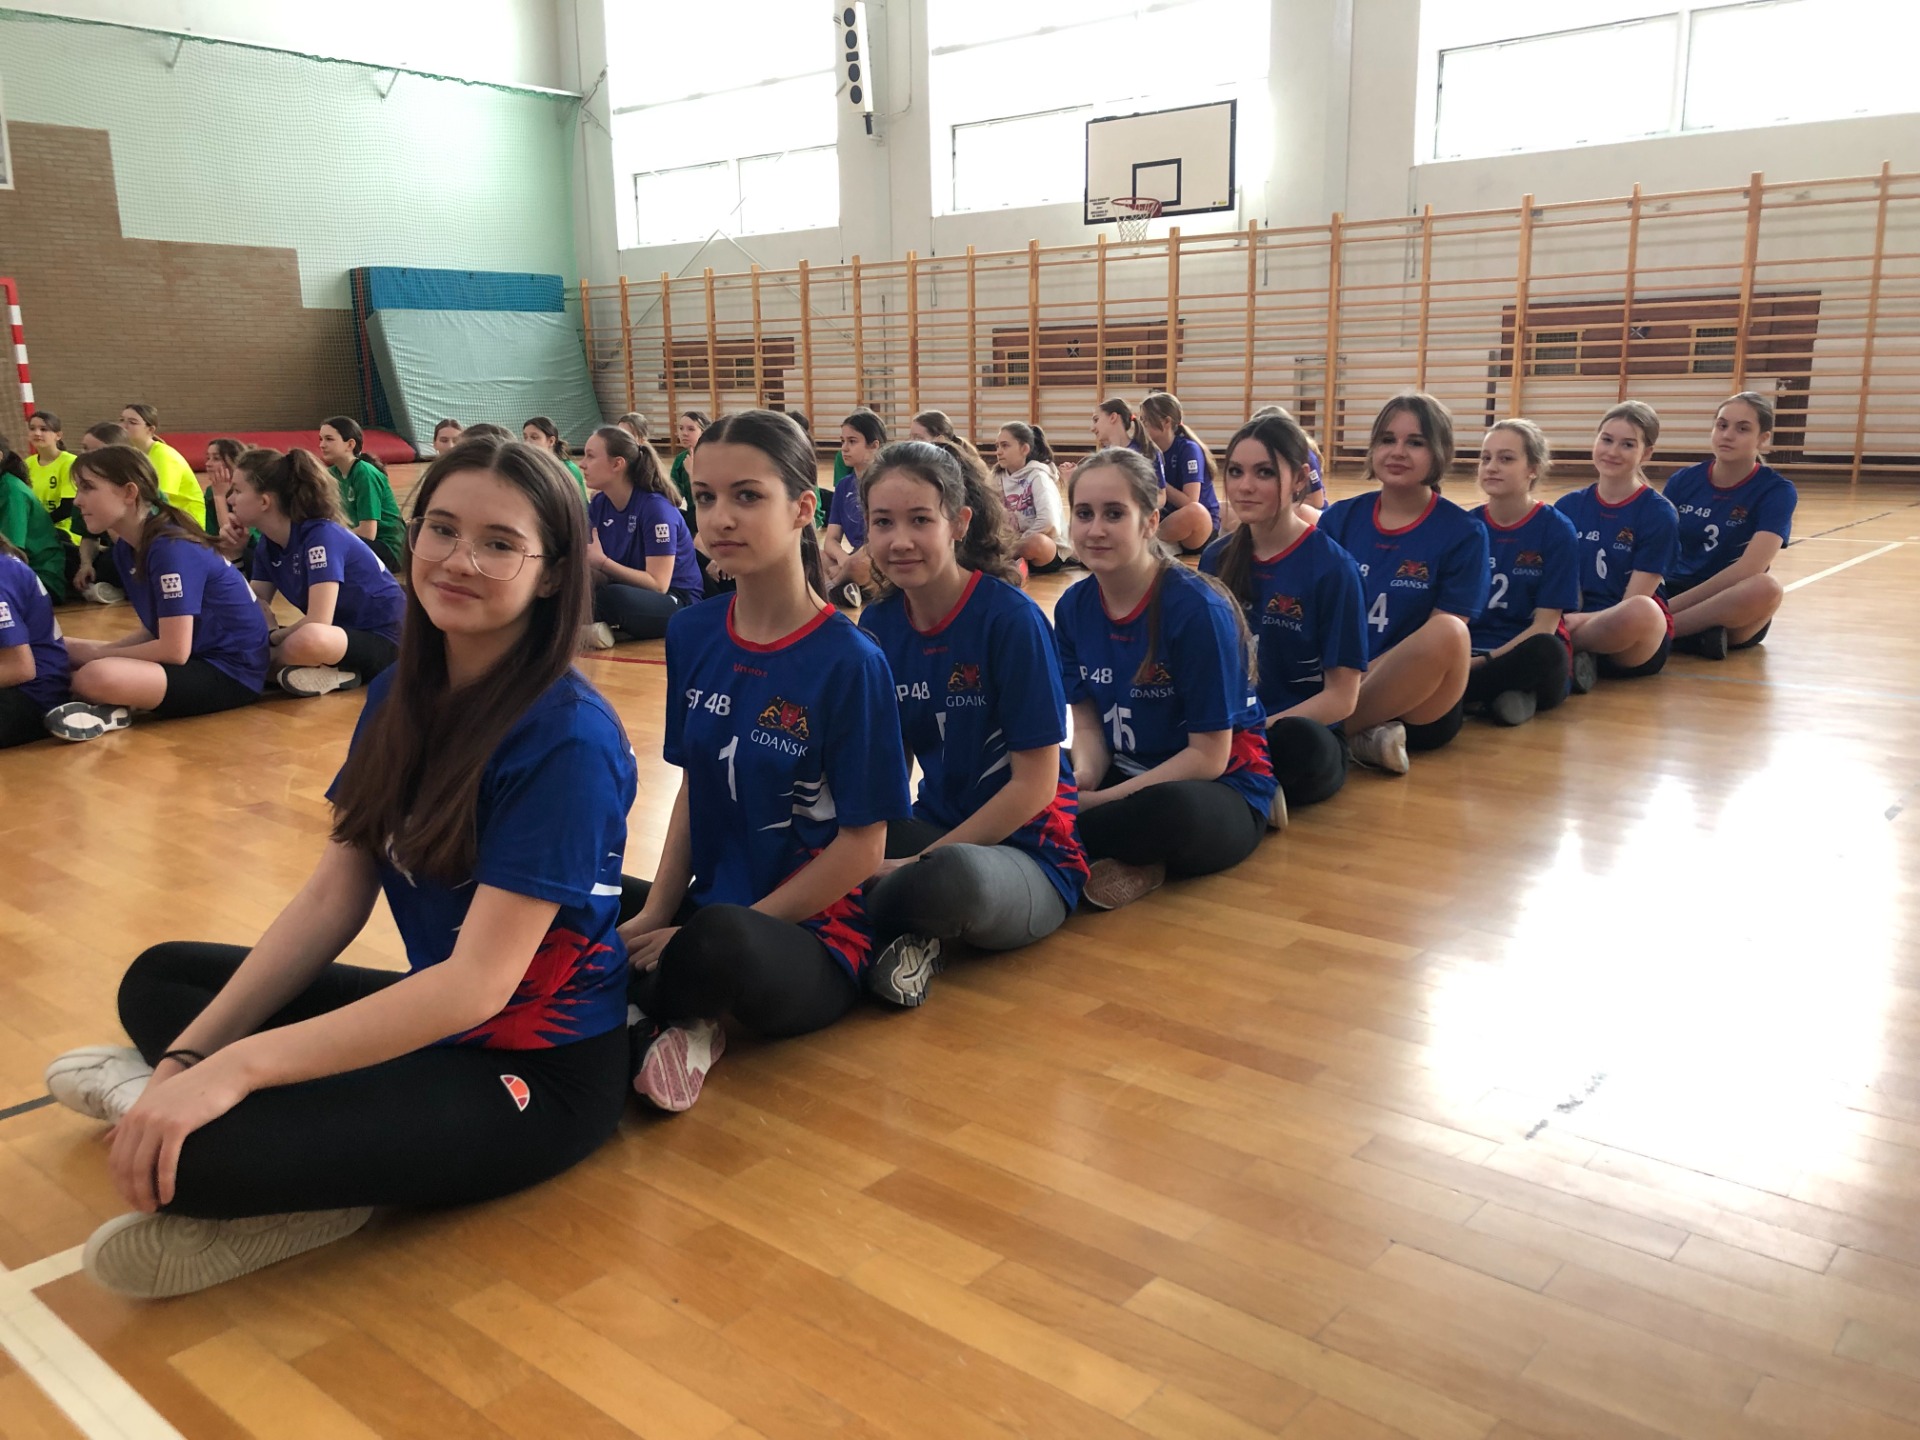 Dziewczynki w niebiesiech strojach w sali gimnastycznej.